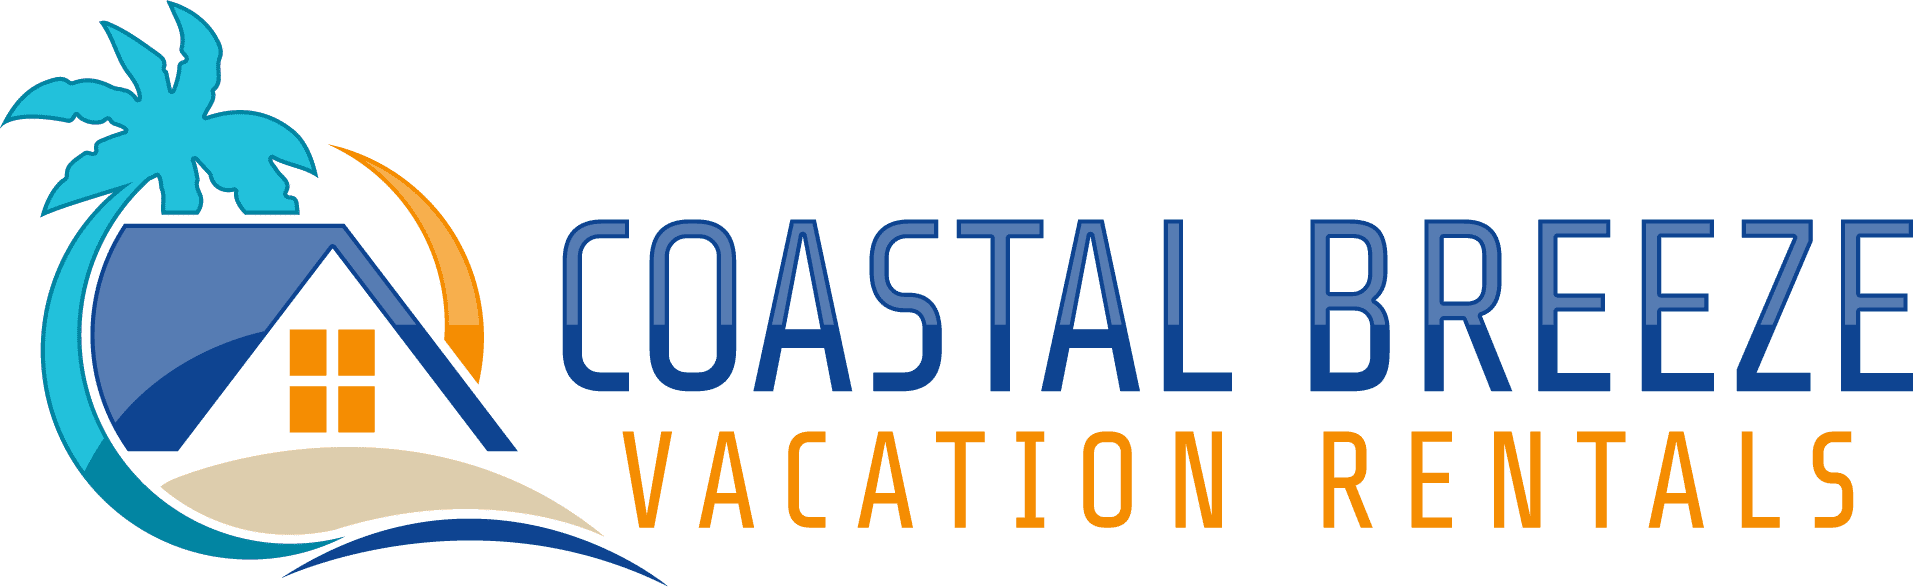 Coastal Breeze Vacation Rentals